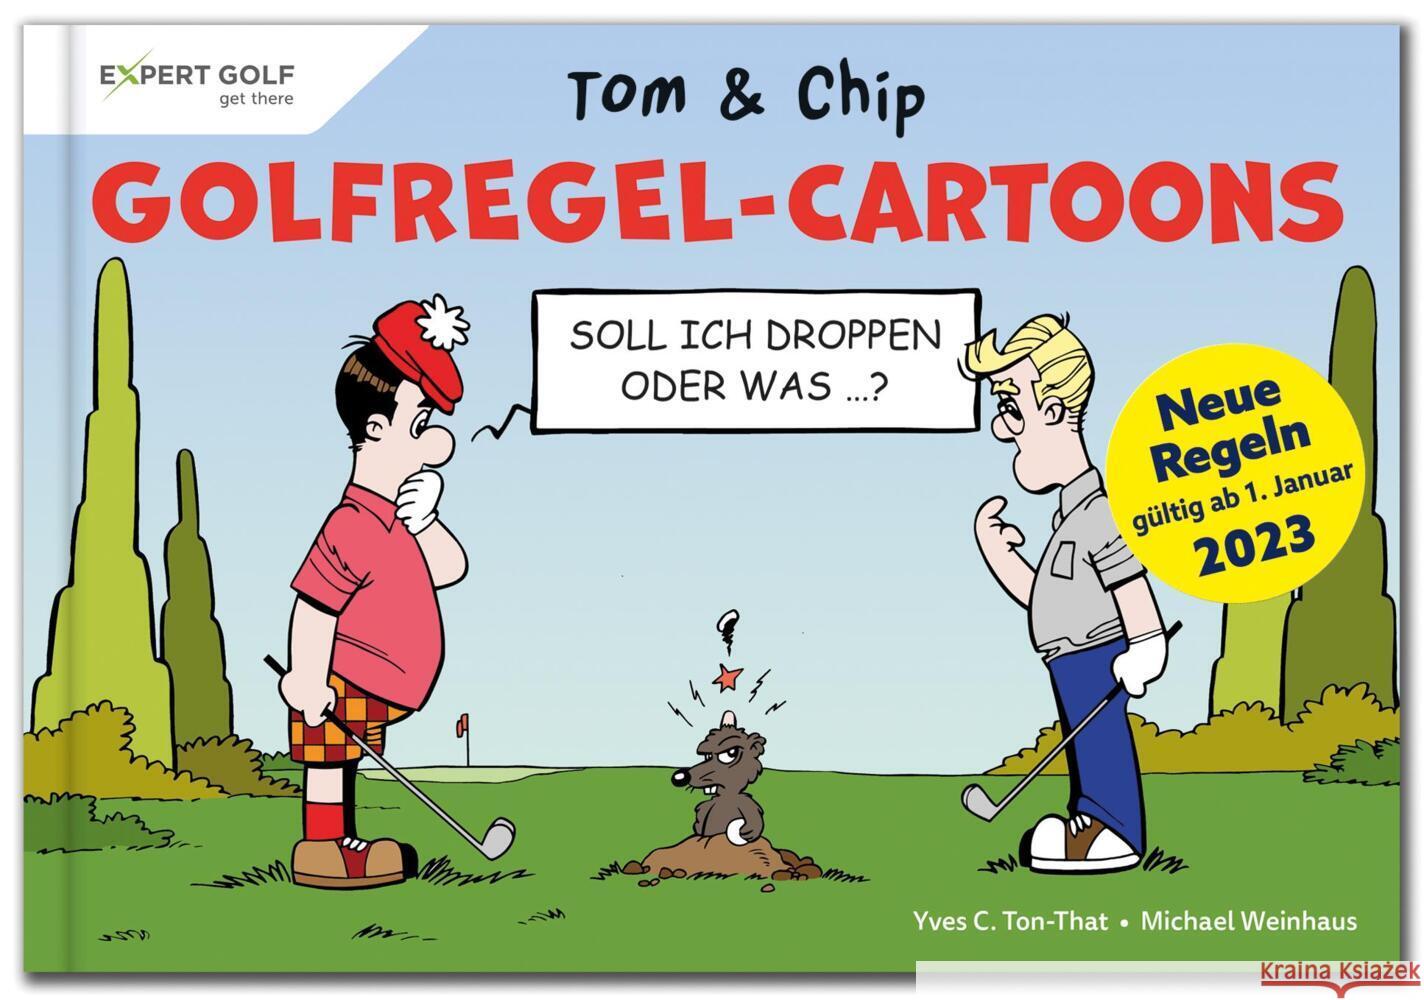 Golfregel-Cartoons mit Tom & Chip Ton-That, Yves C., Weinhaus, Michael 9783906852355 Artigo